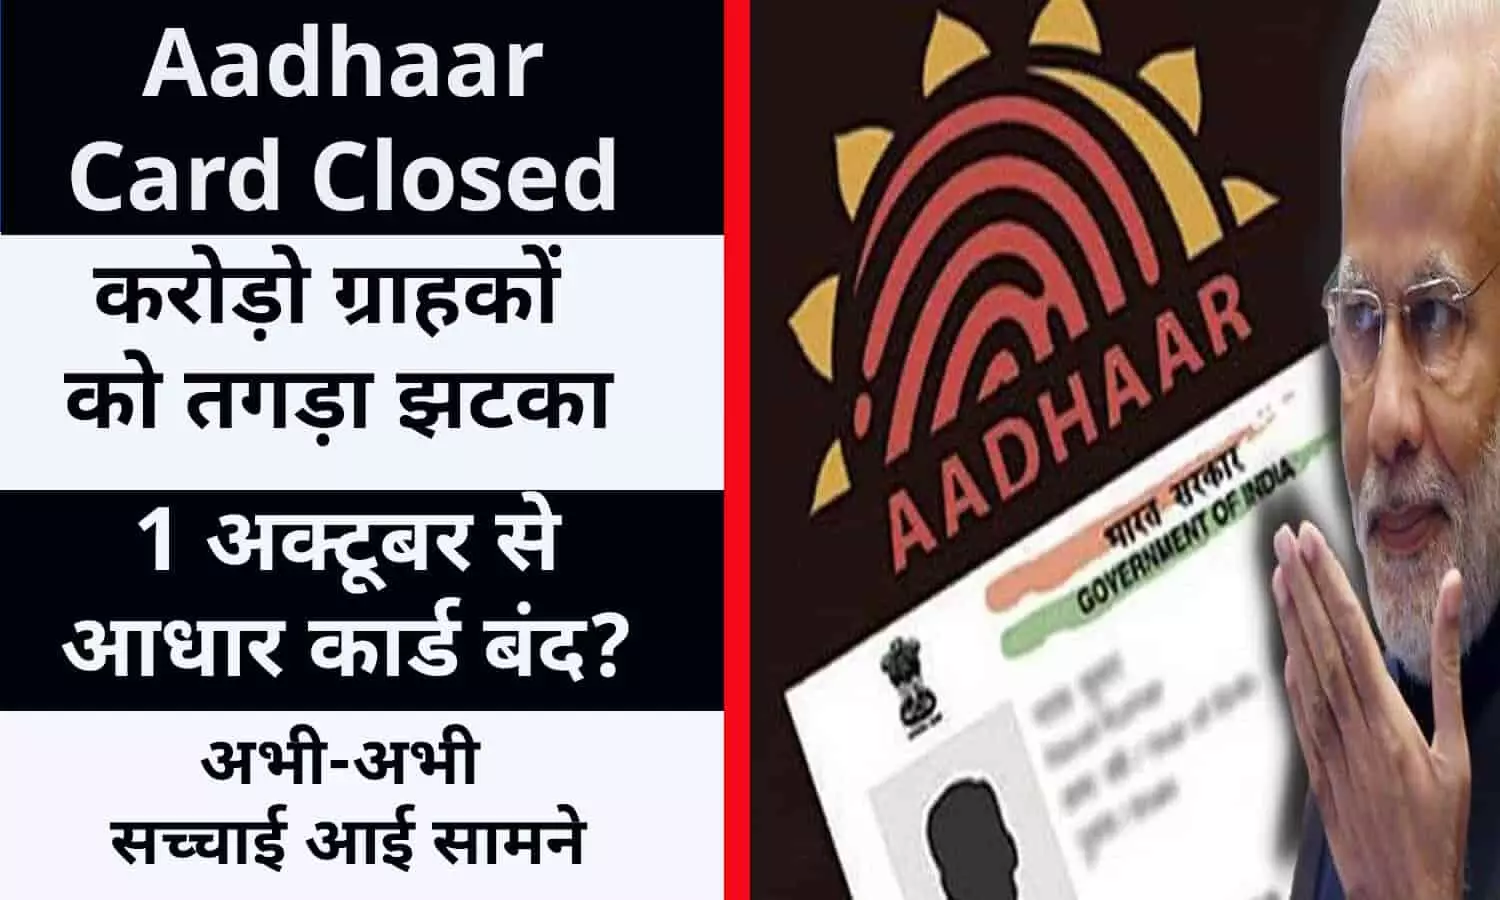 Aadhaar Card Closed